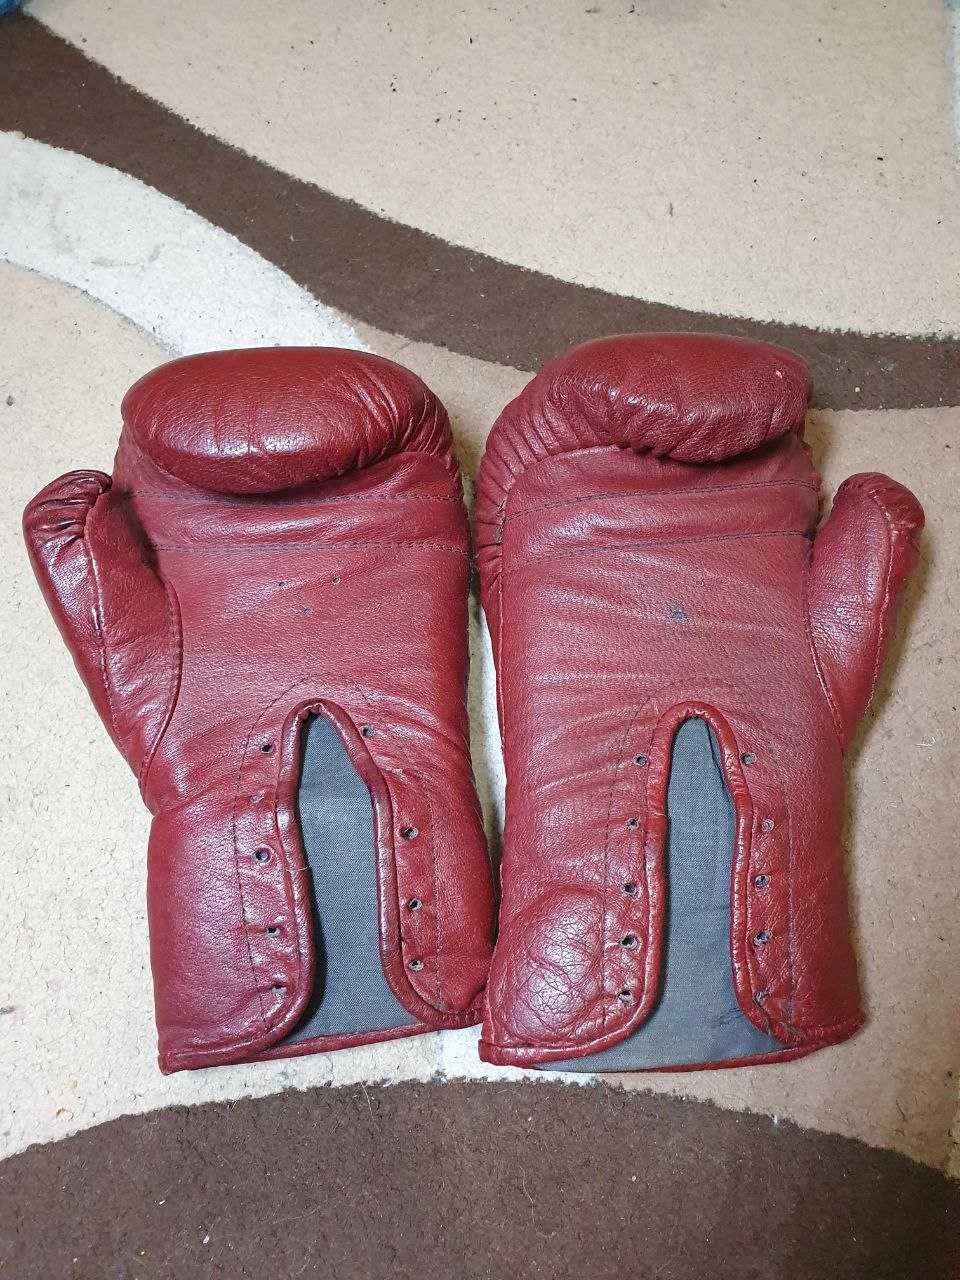 Боксерські рукавиці RoadStar 18-20 унцій